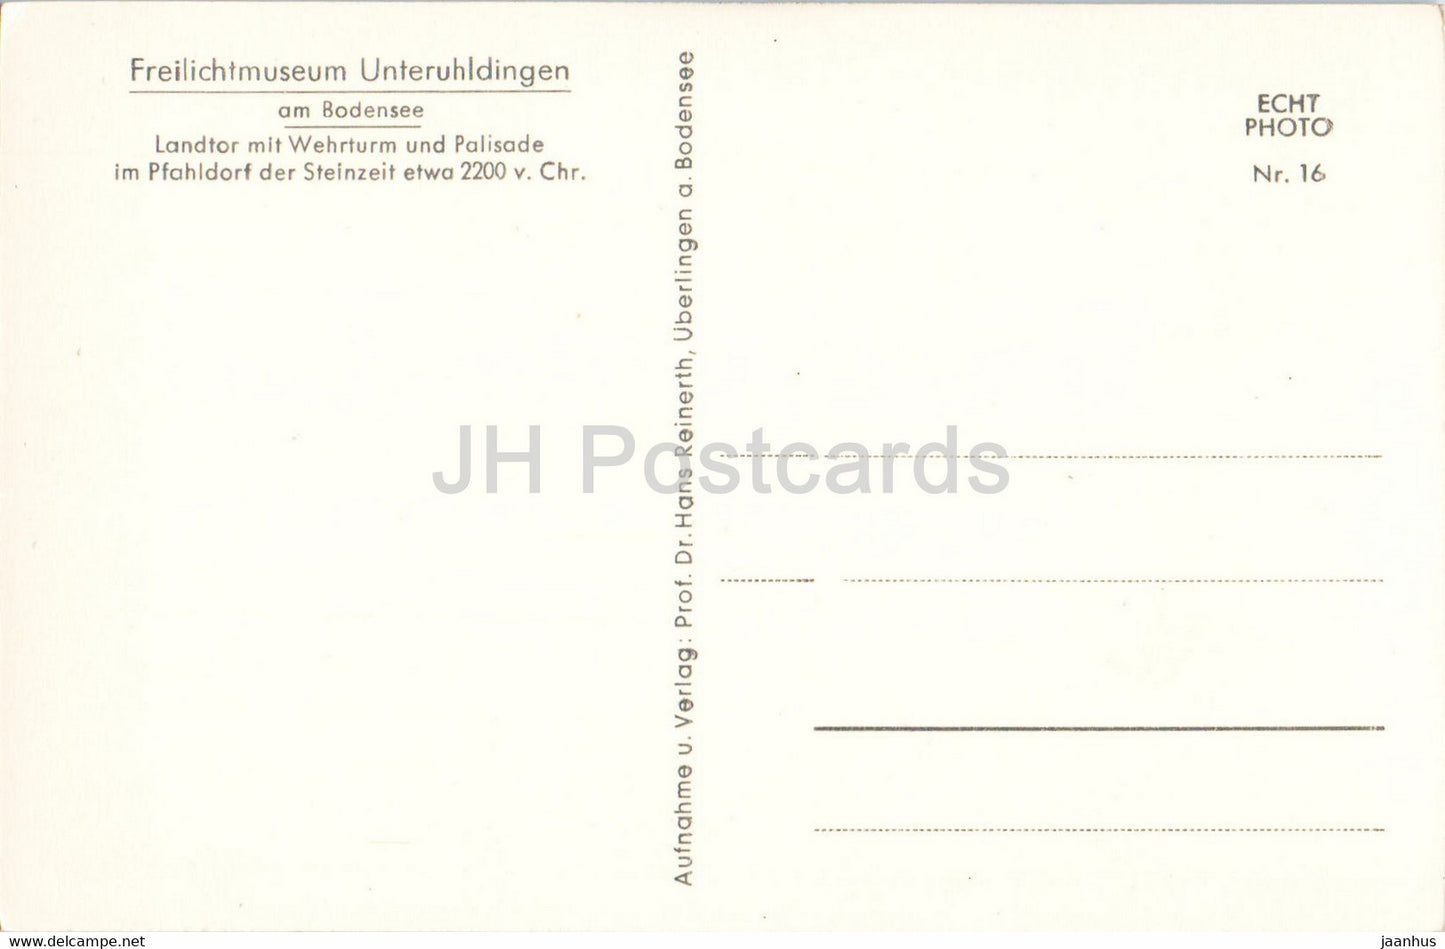 Freilichtmuseum Unteruhldingen am Bodensee - Landtor mit Wehrturm - monde antique - carte postale ancienne - Allemagne - inutilisé